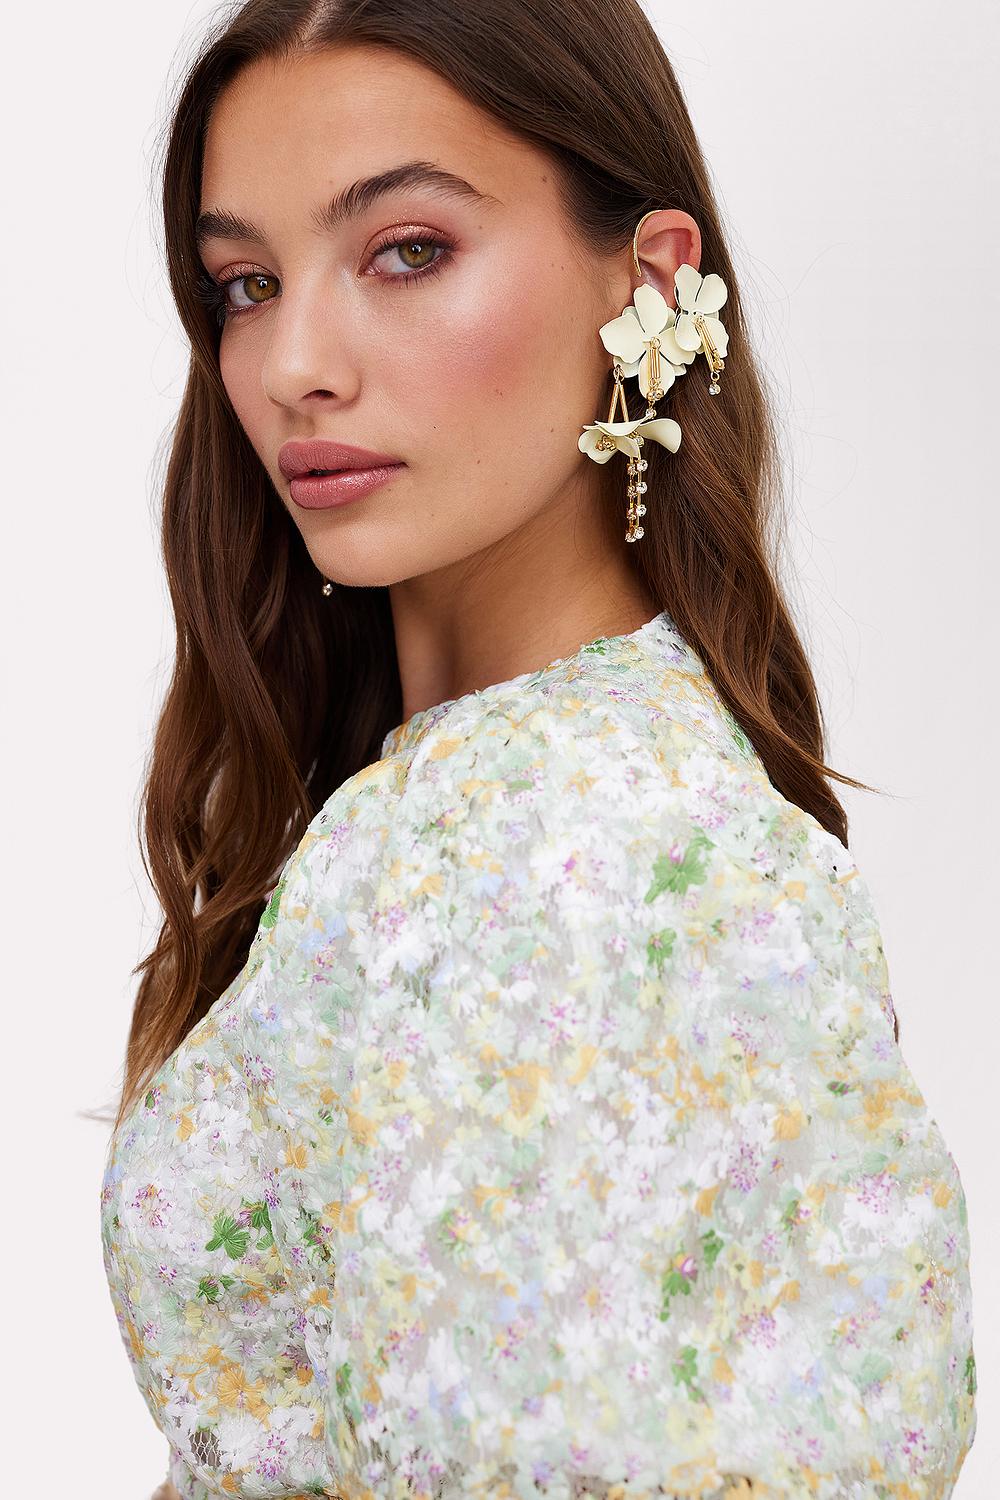 Beige earrings with flowers